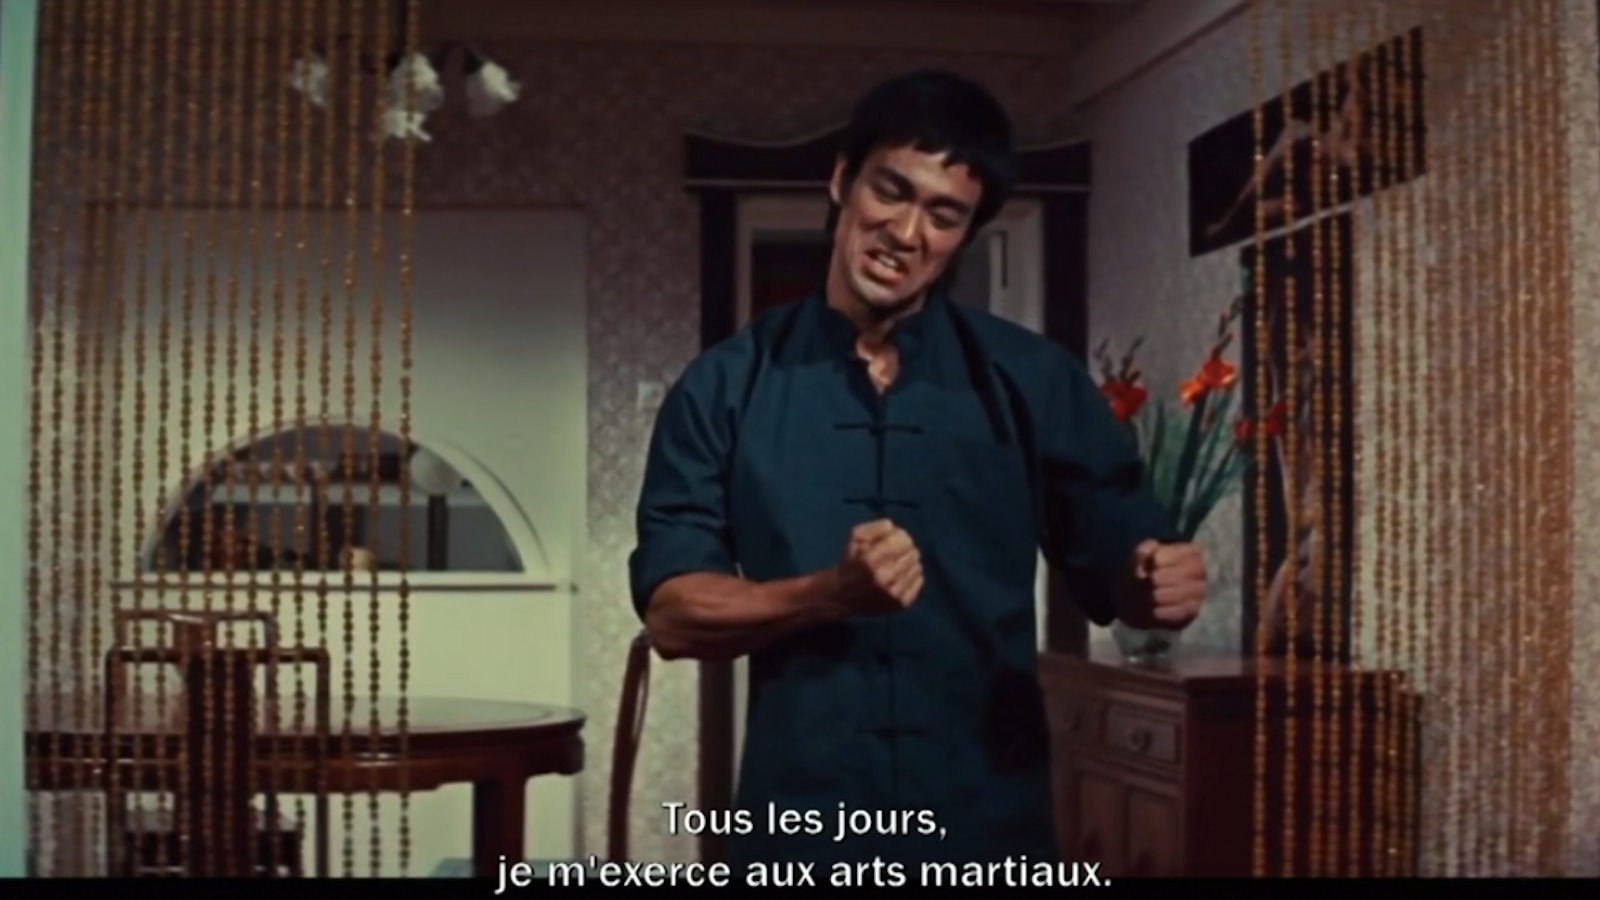 Minute, scarabée : Bruce Lee était-il (vraiment) le prodige d’arts martiaux qu’il prétendait être dans ses films ?